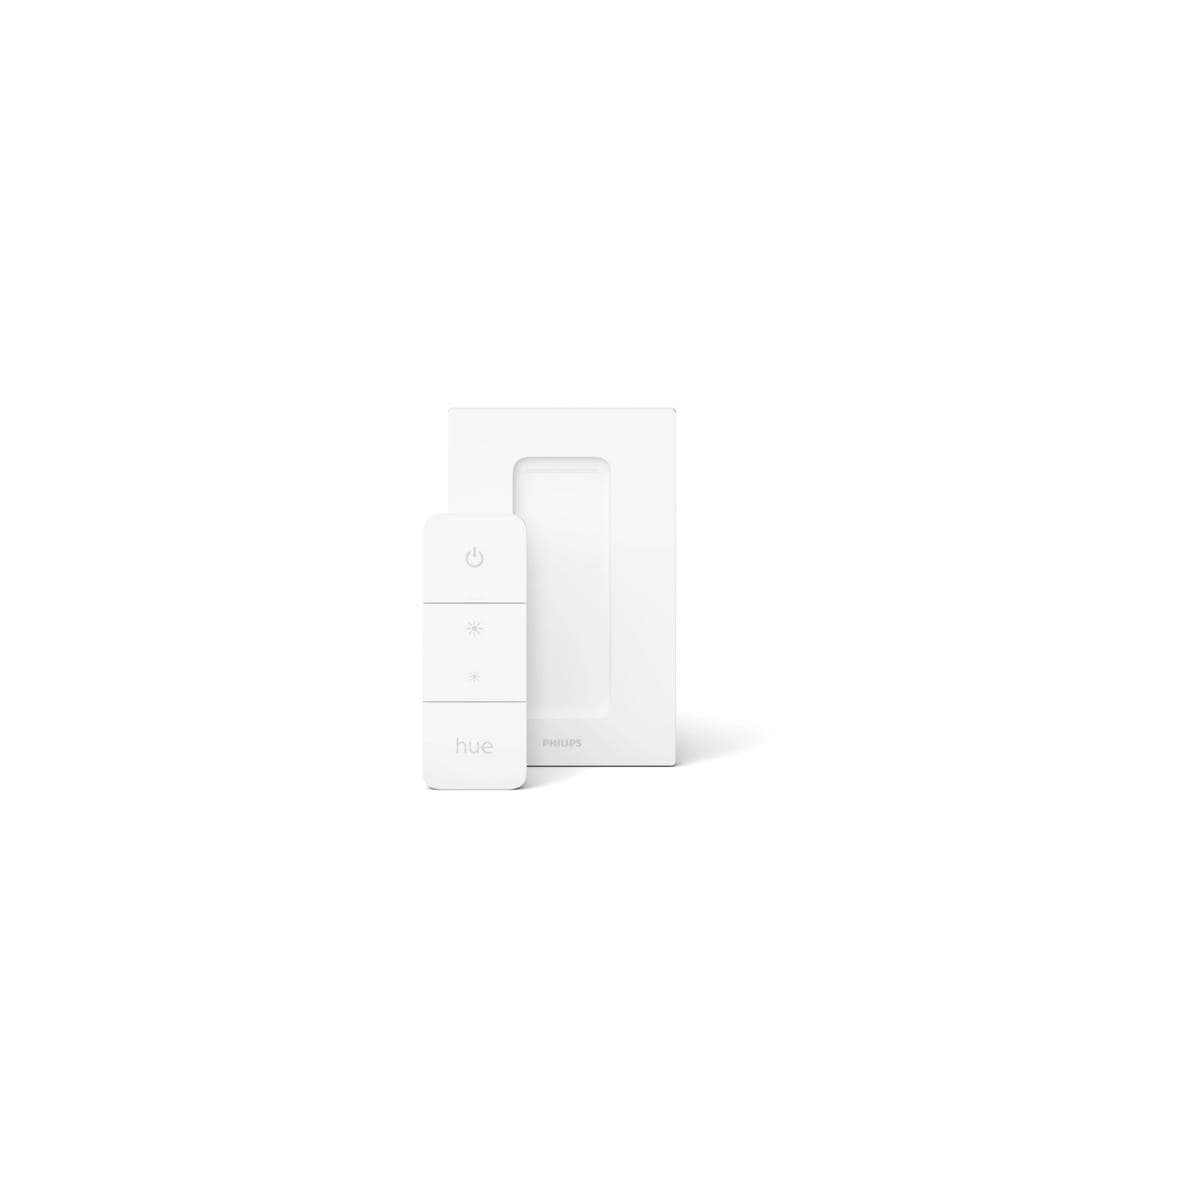 Philips Hue Amaze Ambiance Dimmschalter, Pendelleuchte, 2900lm, 4000K, weiß White 25W, Elektroshop Wagner LED (929003054801)